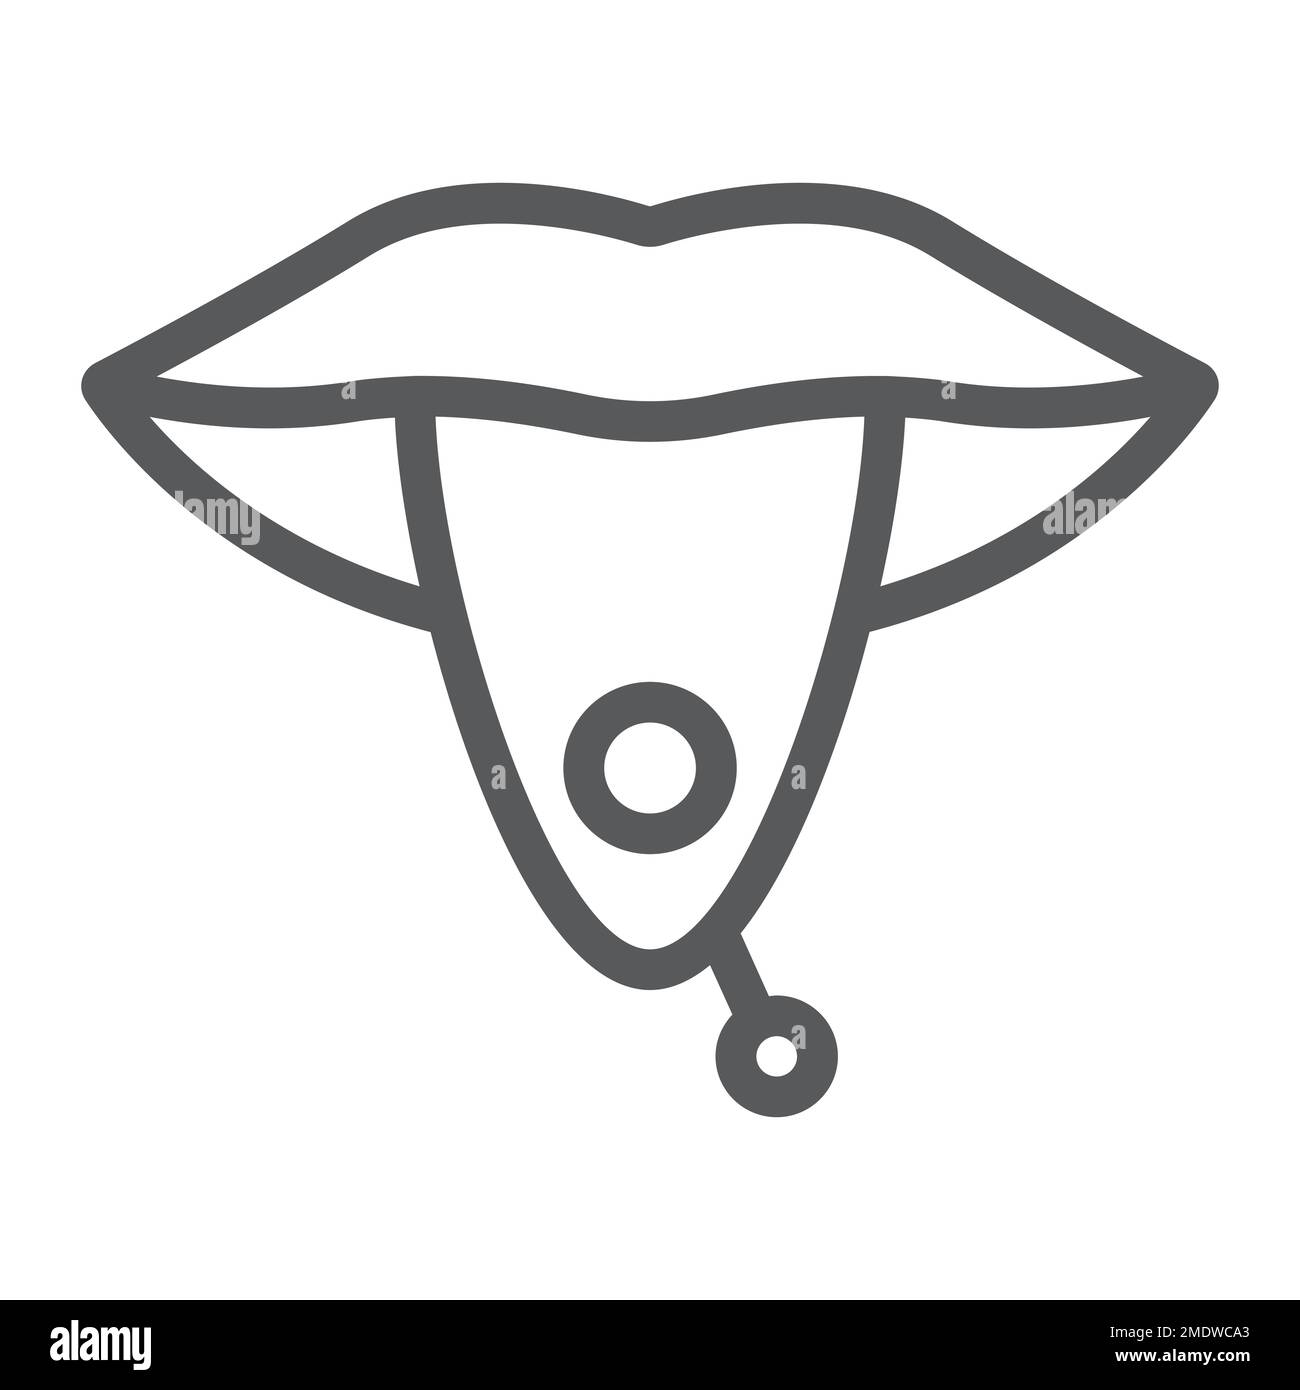 Symbol mit durchstechender Zunge, Schmuck und Accessoire, Zeichen mit durchlöcherter Zunge, Vektorgrafiken, lineares Muster auf weißem Hintergrund, eps 10. Stock Vektor